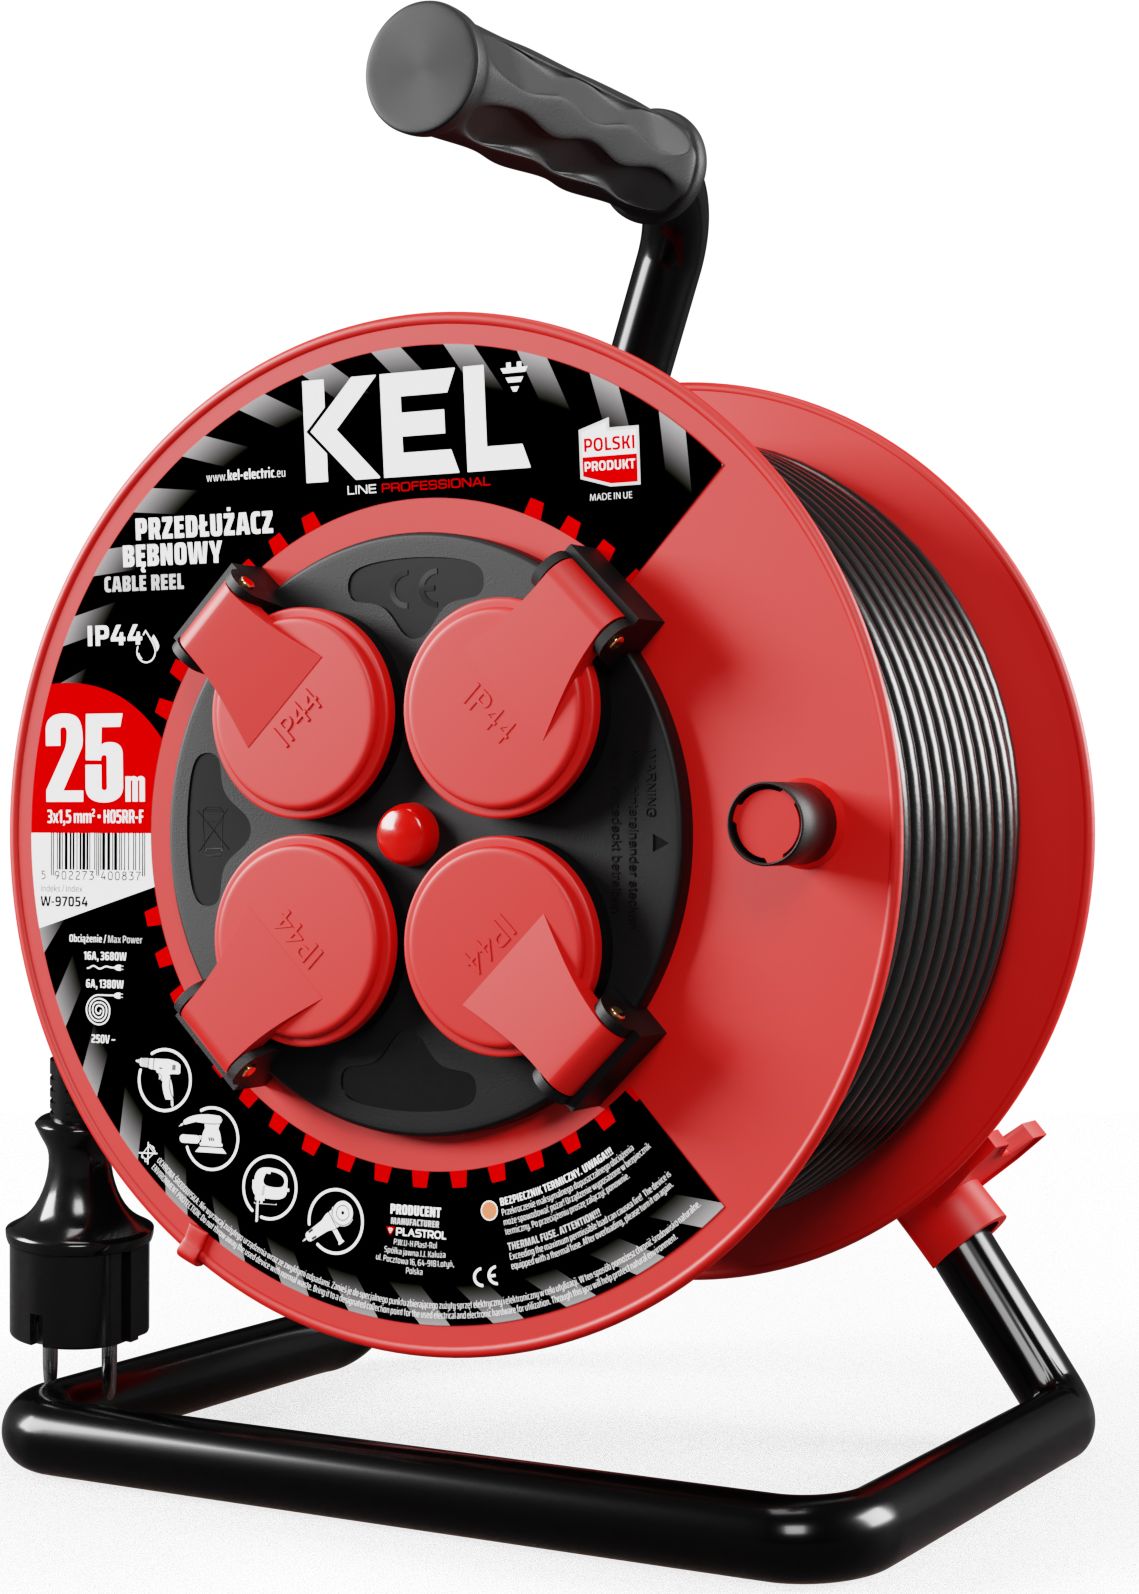 Prelungitor cablu cu tambur KEL, 25M, 4 Prize, Ip-44- 4X2P+Z, 10A, 2300W, 3X1,5Mm H05Rr-F, Pb-Pro / KEL-W-97054